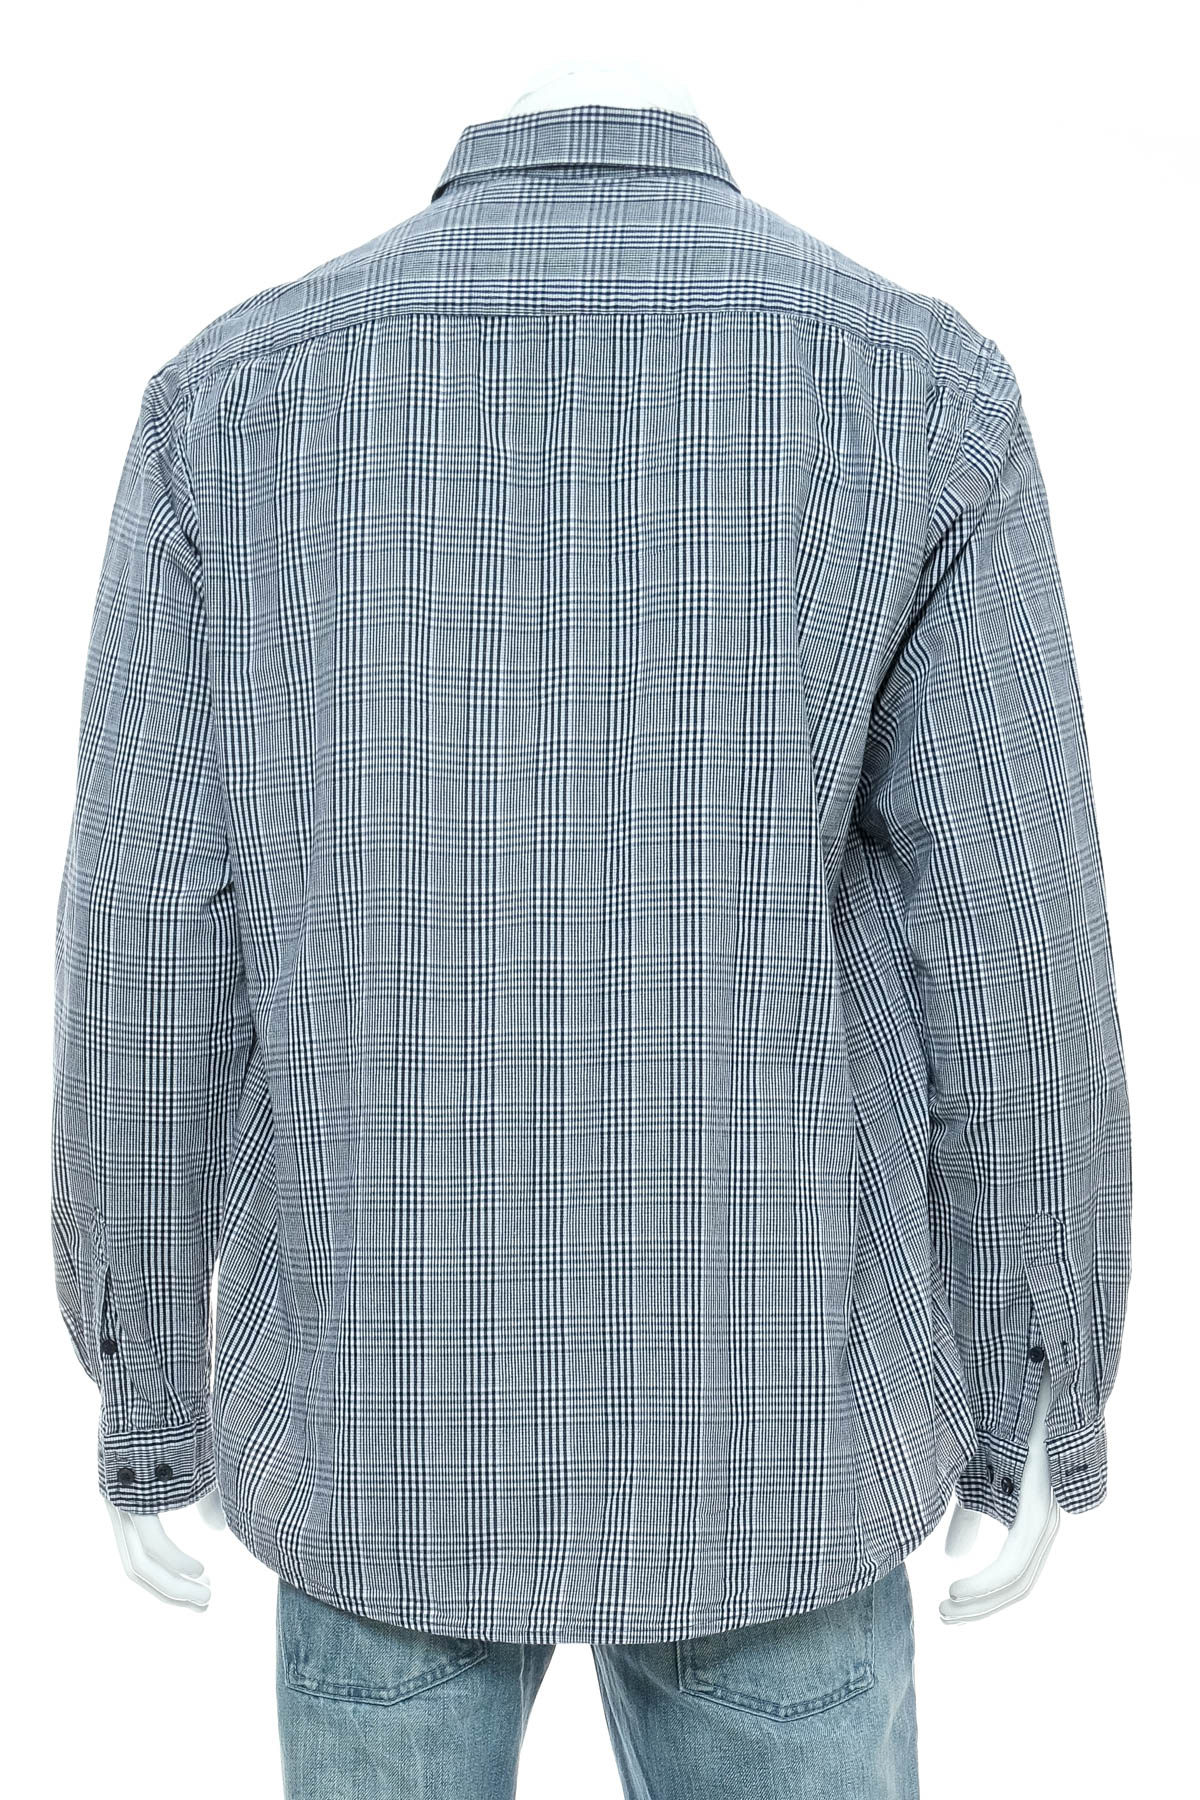 Men's shirt - Watson's - 1